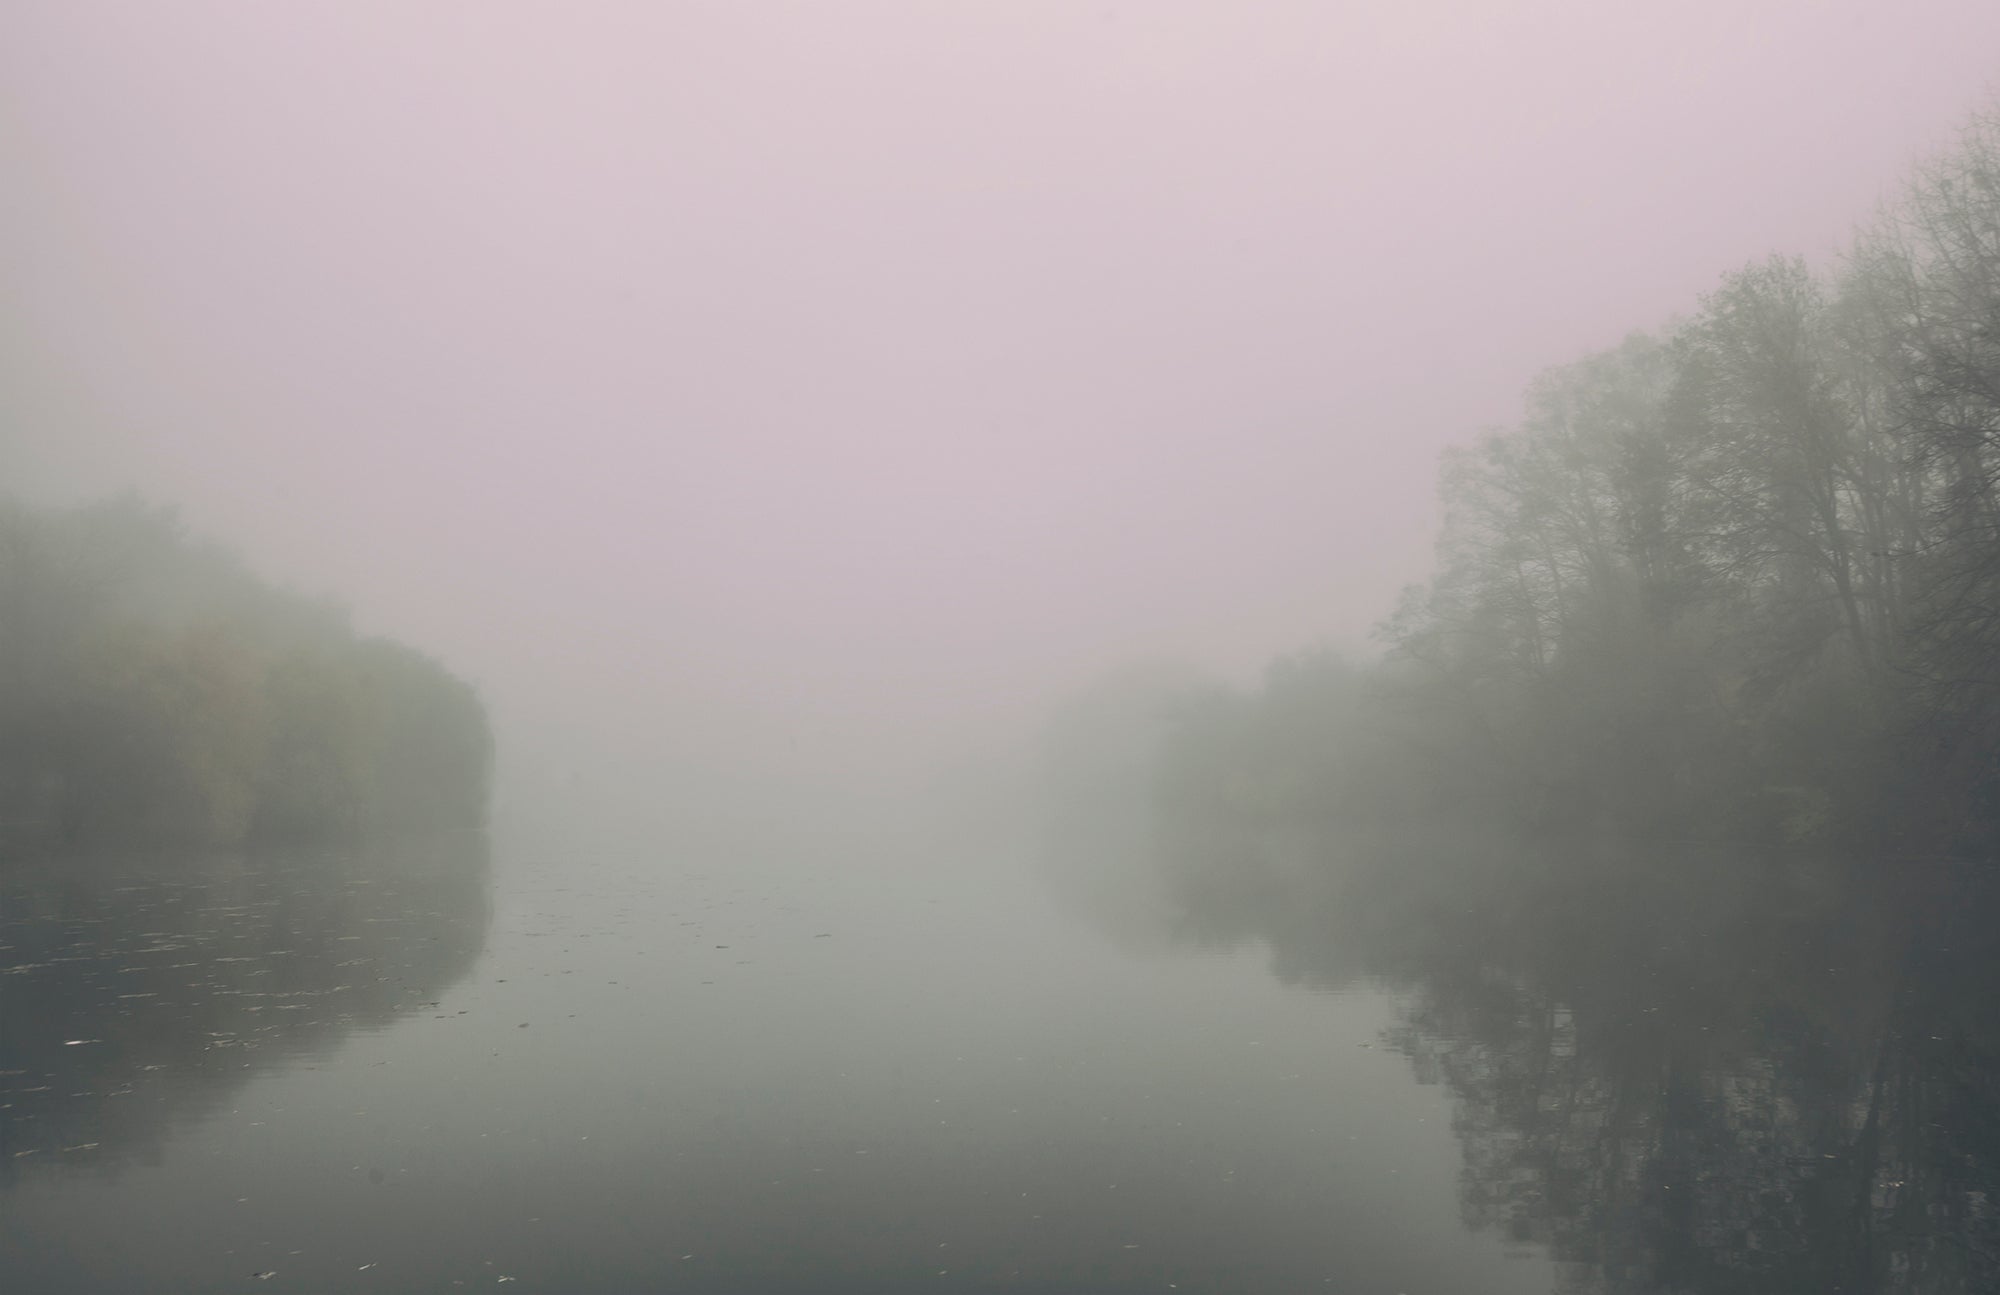 Silent River Haze - Foggy Misty Morning River Wallpaper Mural